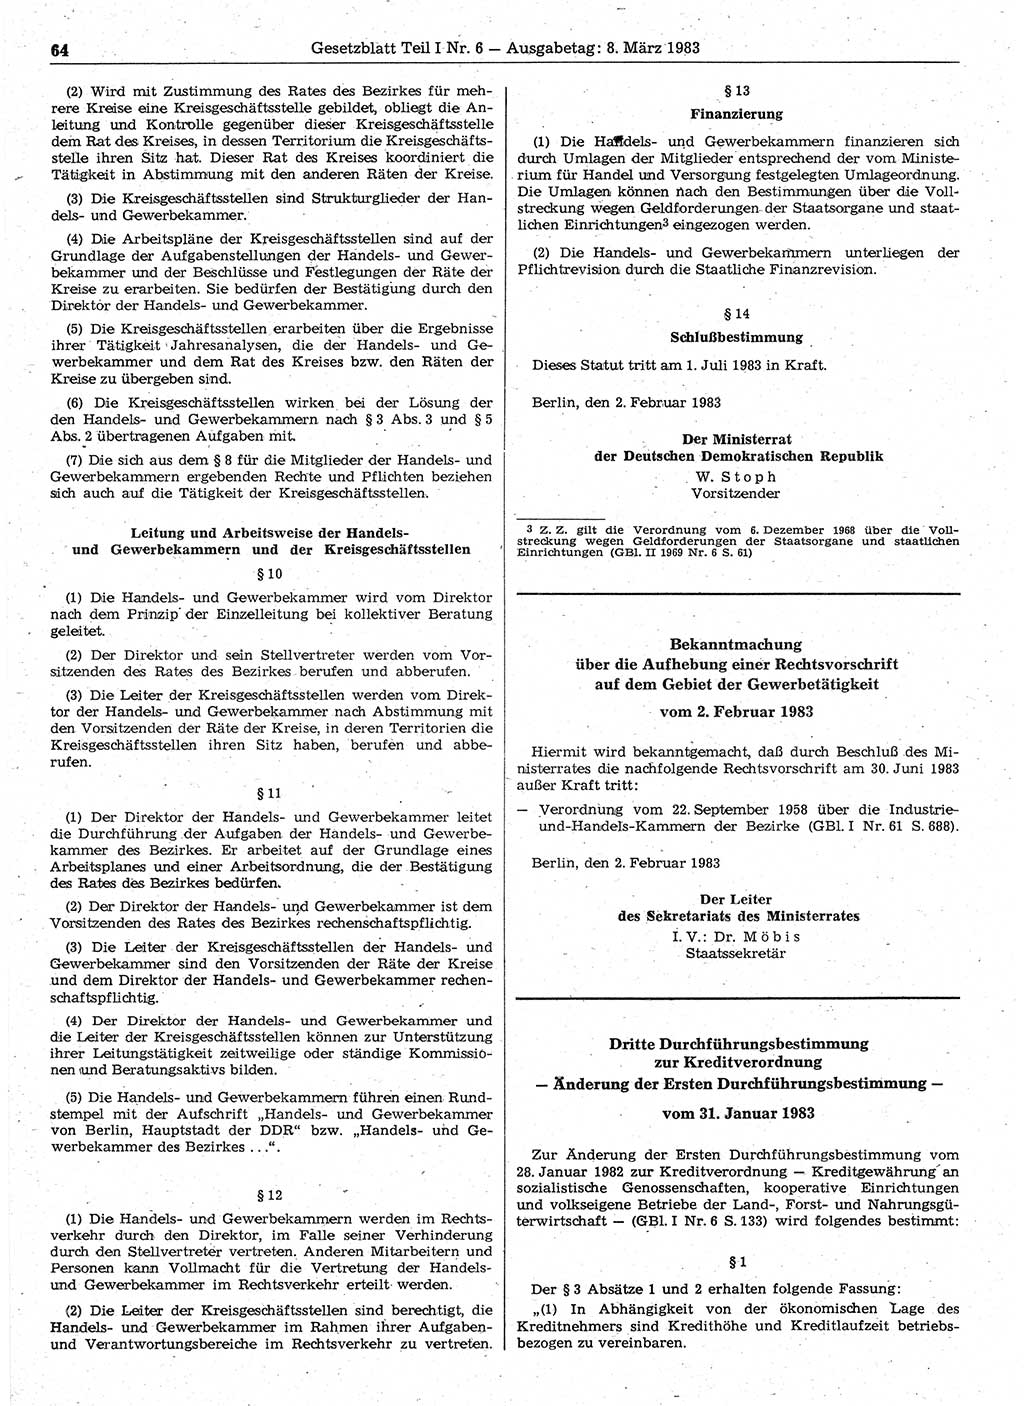 Gesetzblatt (GBl.) der Deutschen Demokratischen Republik (DDR) Teil Ⅰ 1983, Seite 64 (GBl. DDR Ⅰ 1983, S. 64)